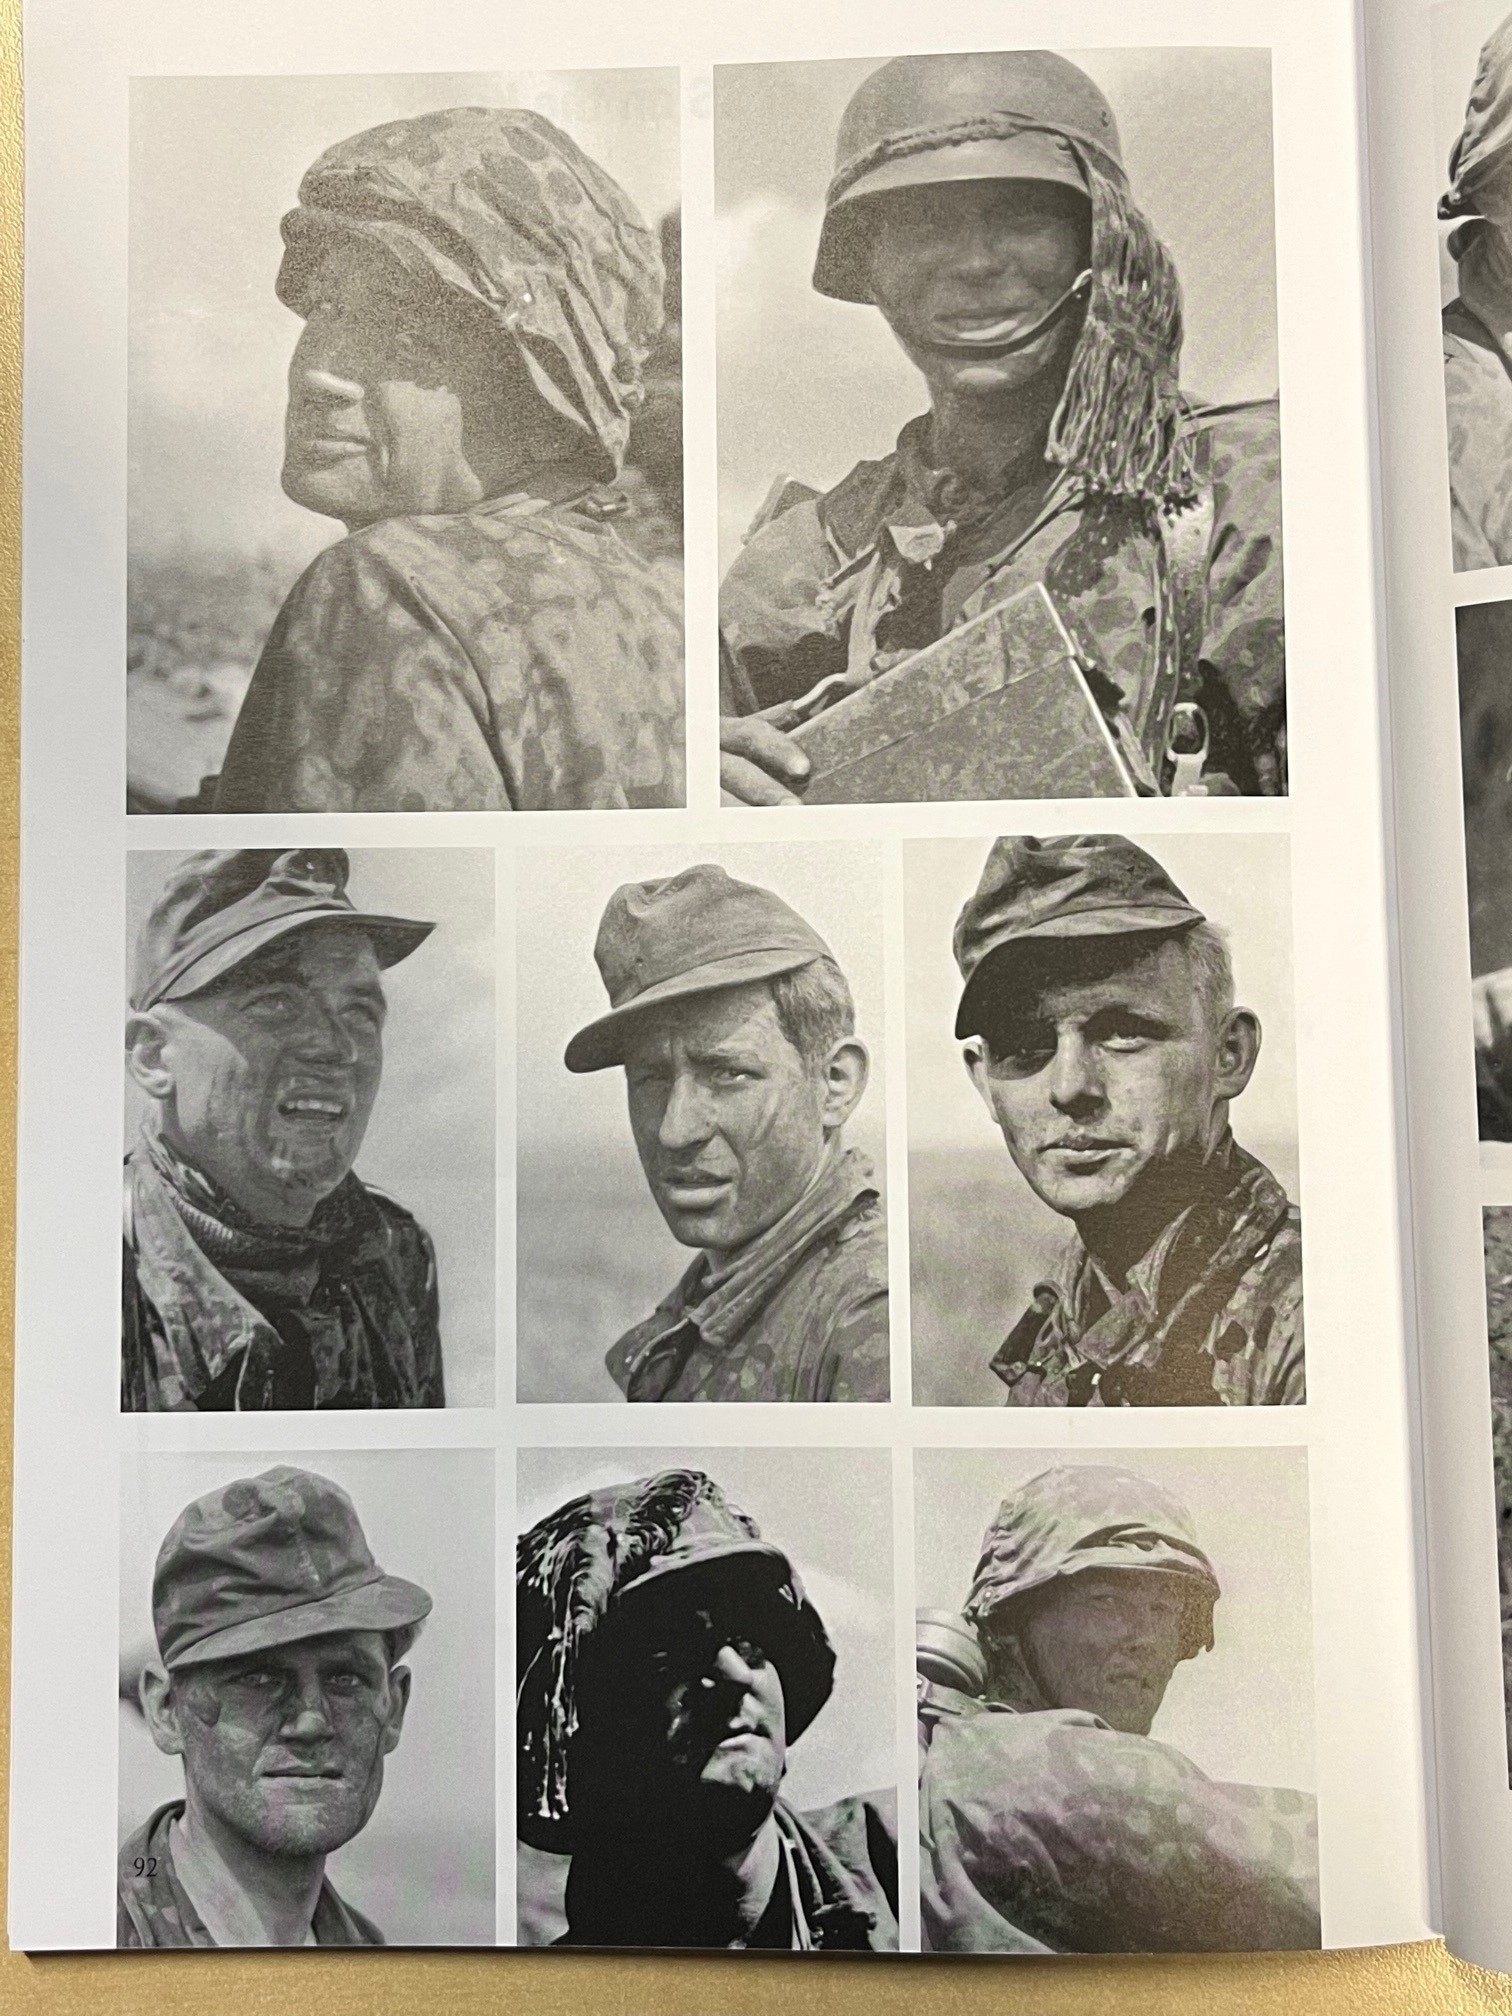 Portraits of some participants